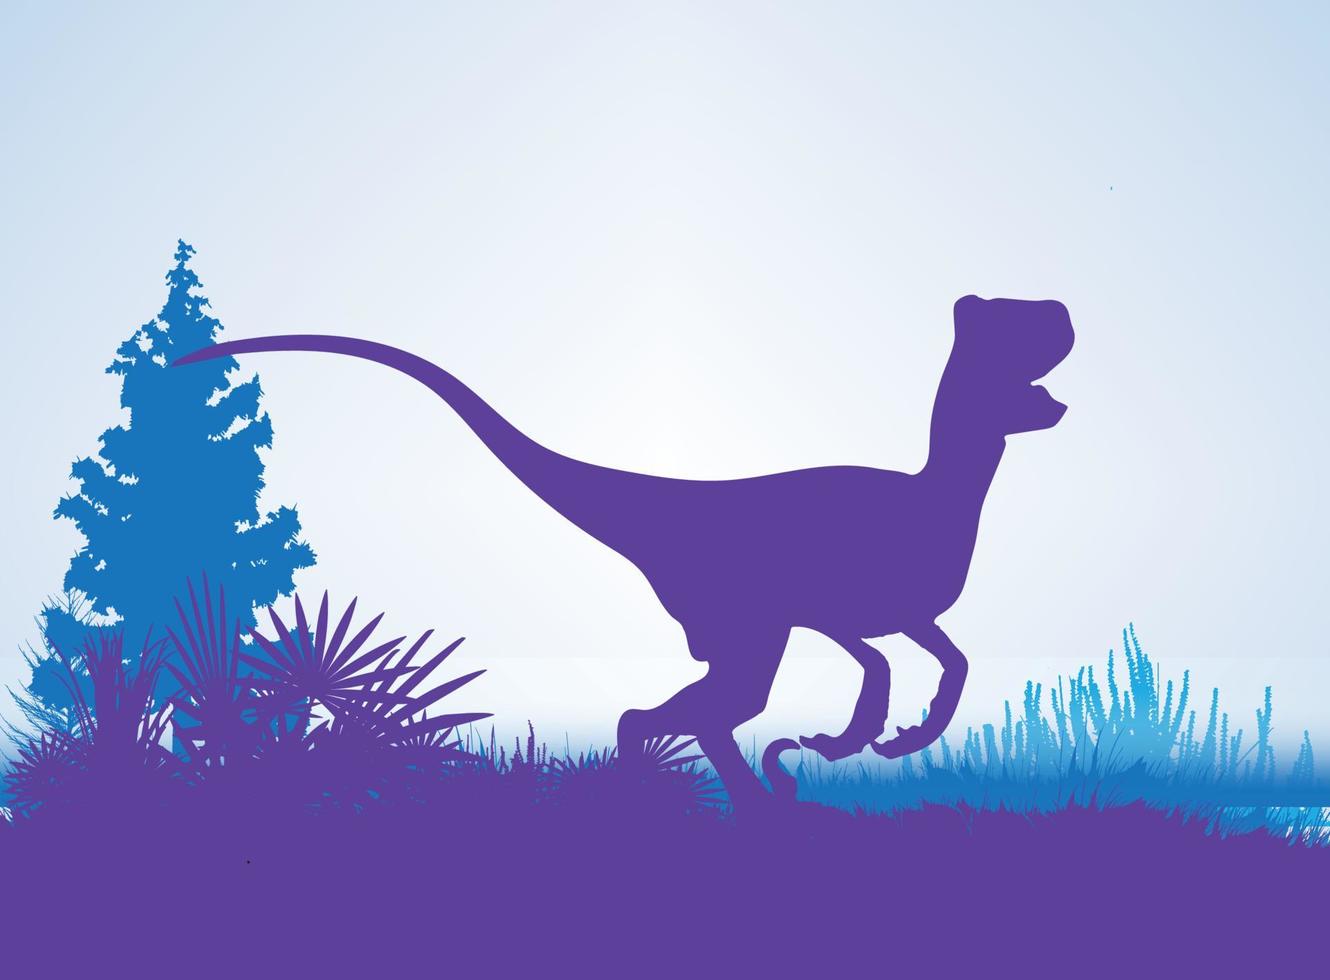 velociraptor, dinosaurussen silhouetten in prehistorische omgeving overlappende lagen decoratieve achtergrond banner abstracte vectorillustratie vector